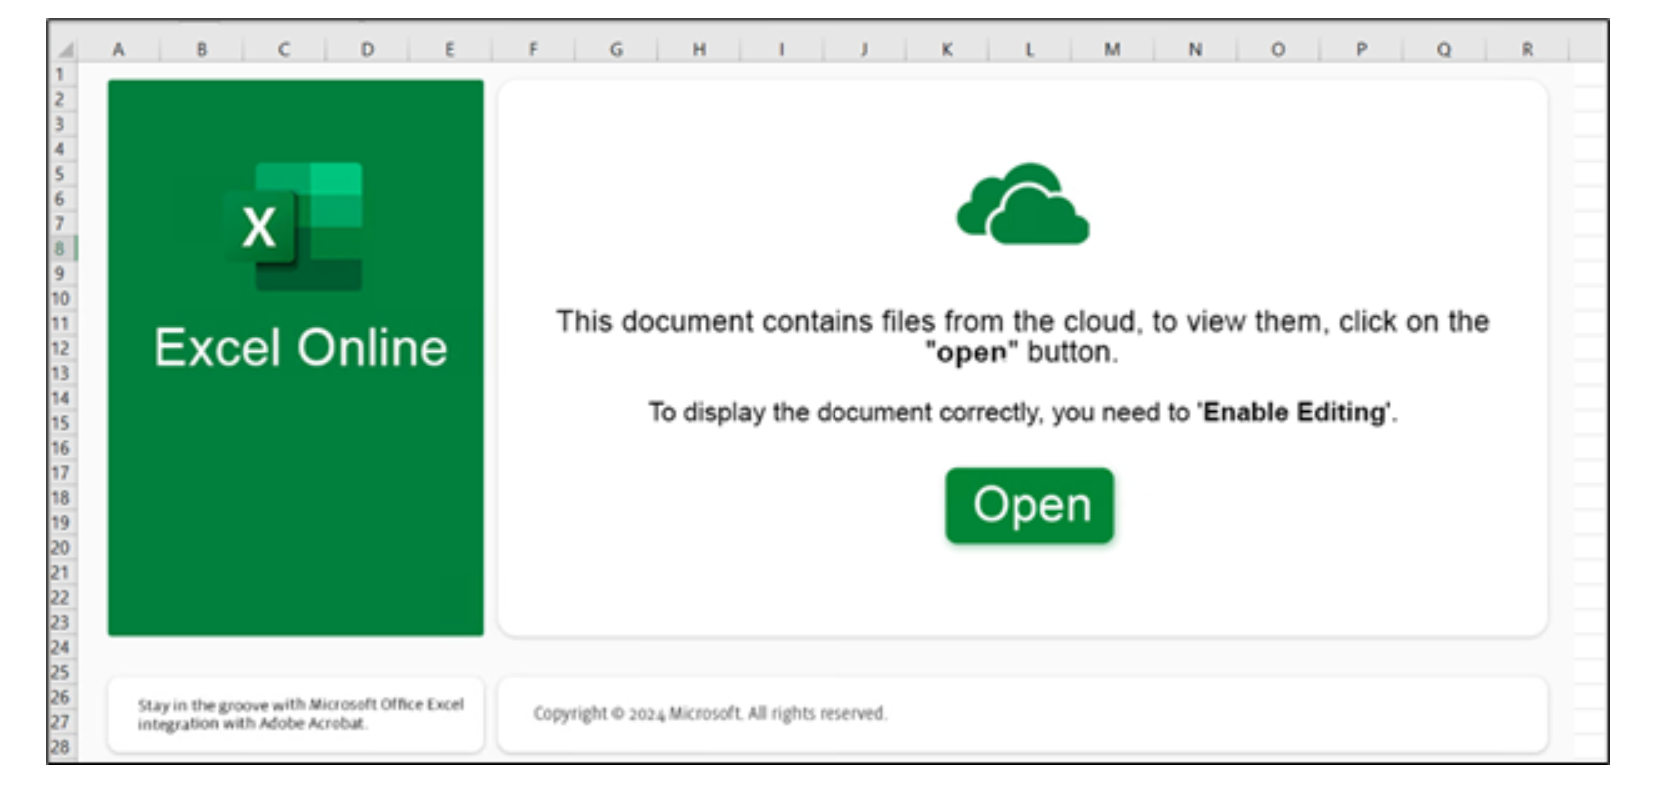 クラウドからのファイルに関するメッセージと、編集を可能にする [Open (開く)] ボタンを表示する Excel Online インターフェイスのスクリーンショット。